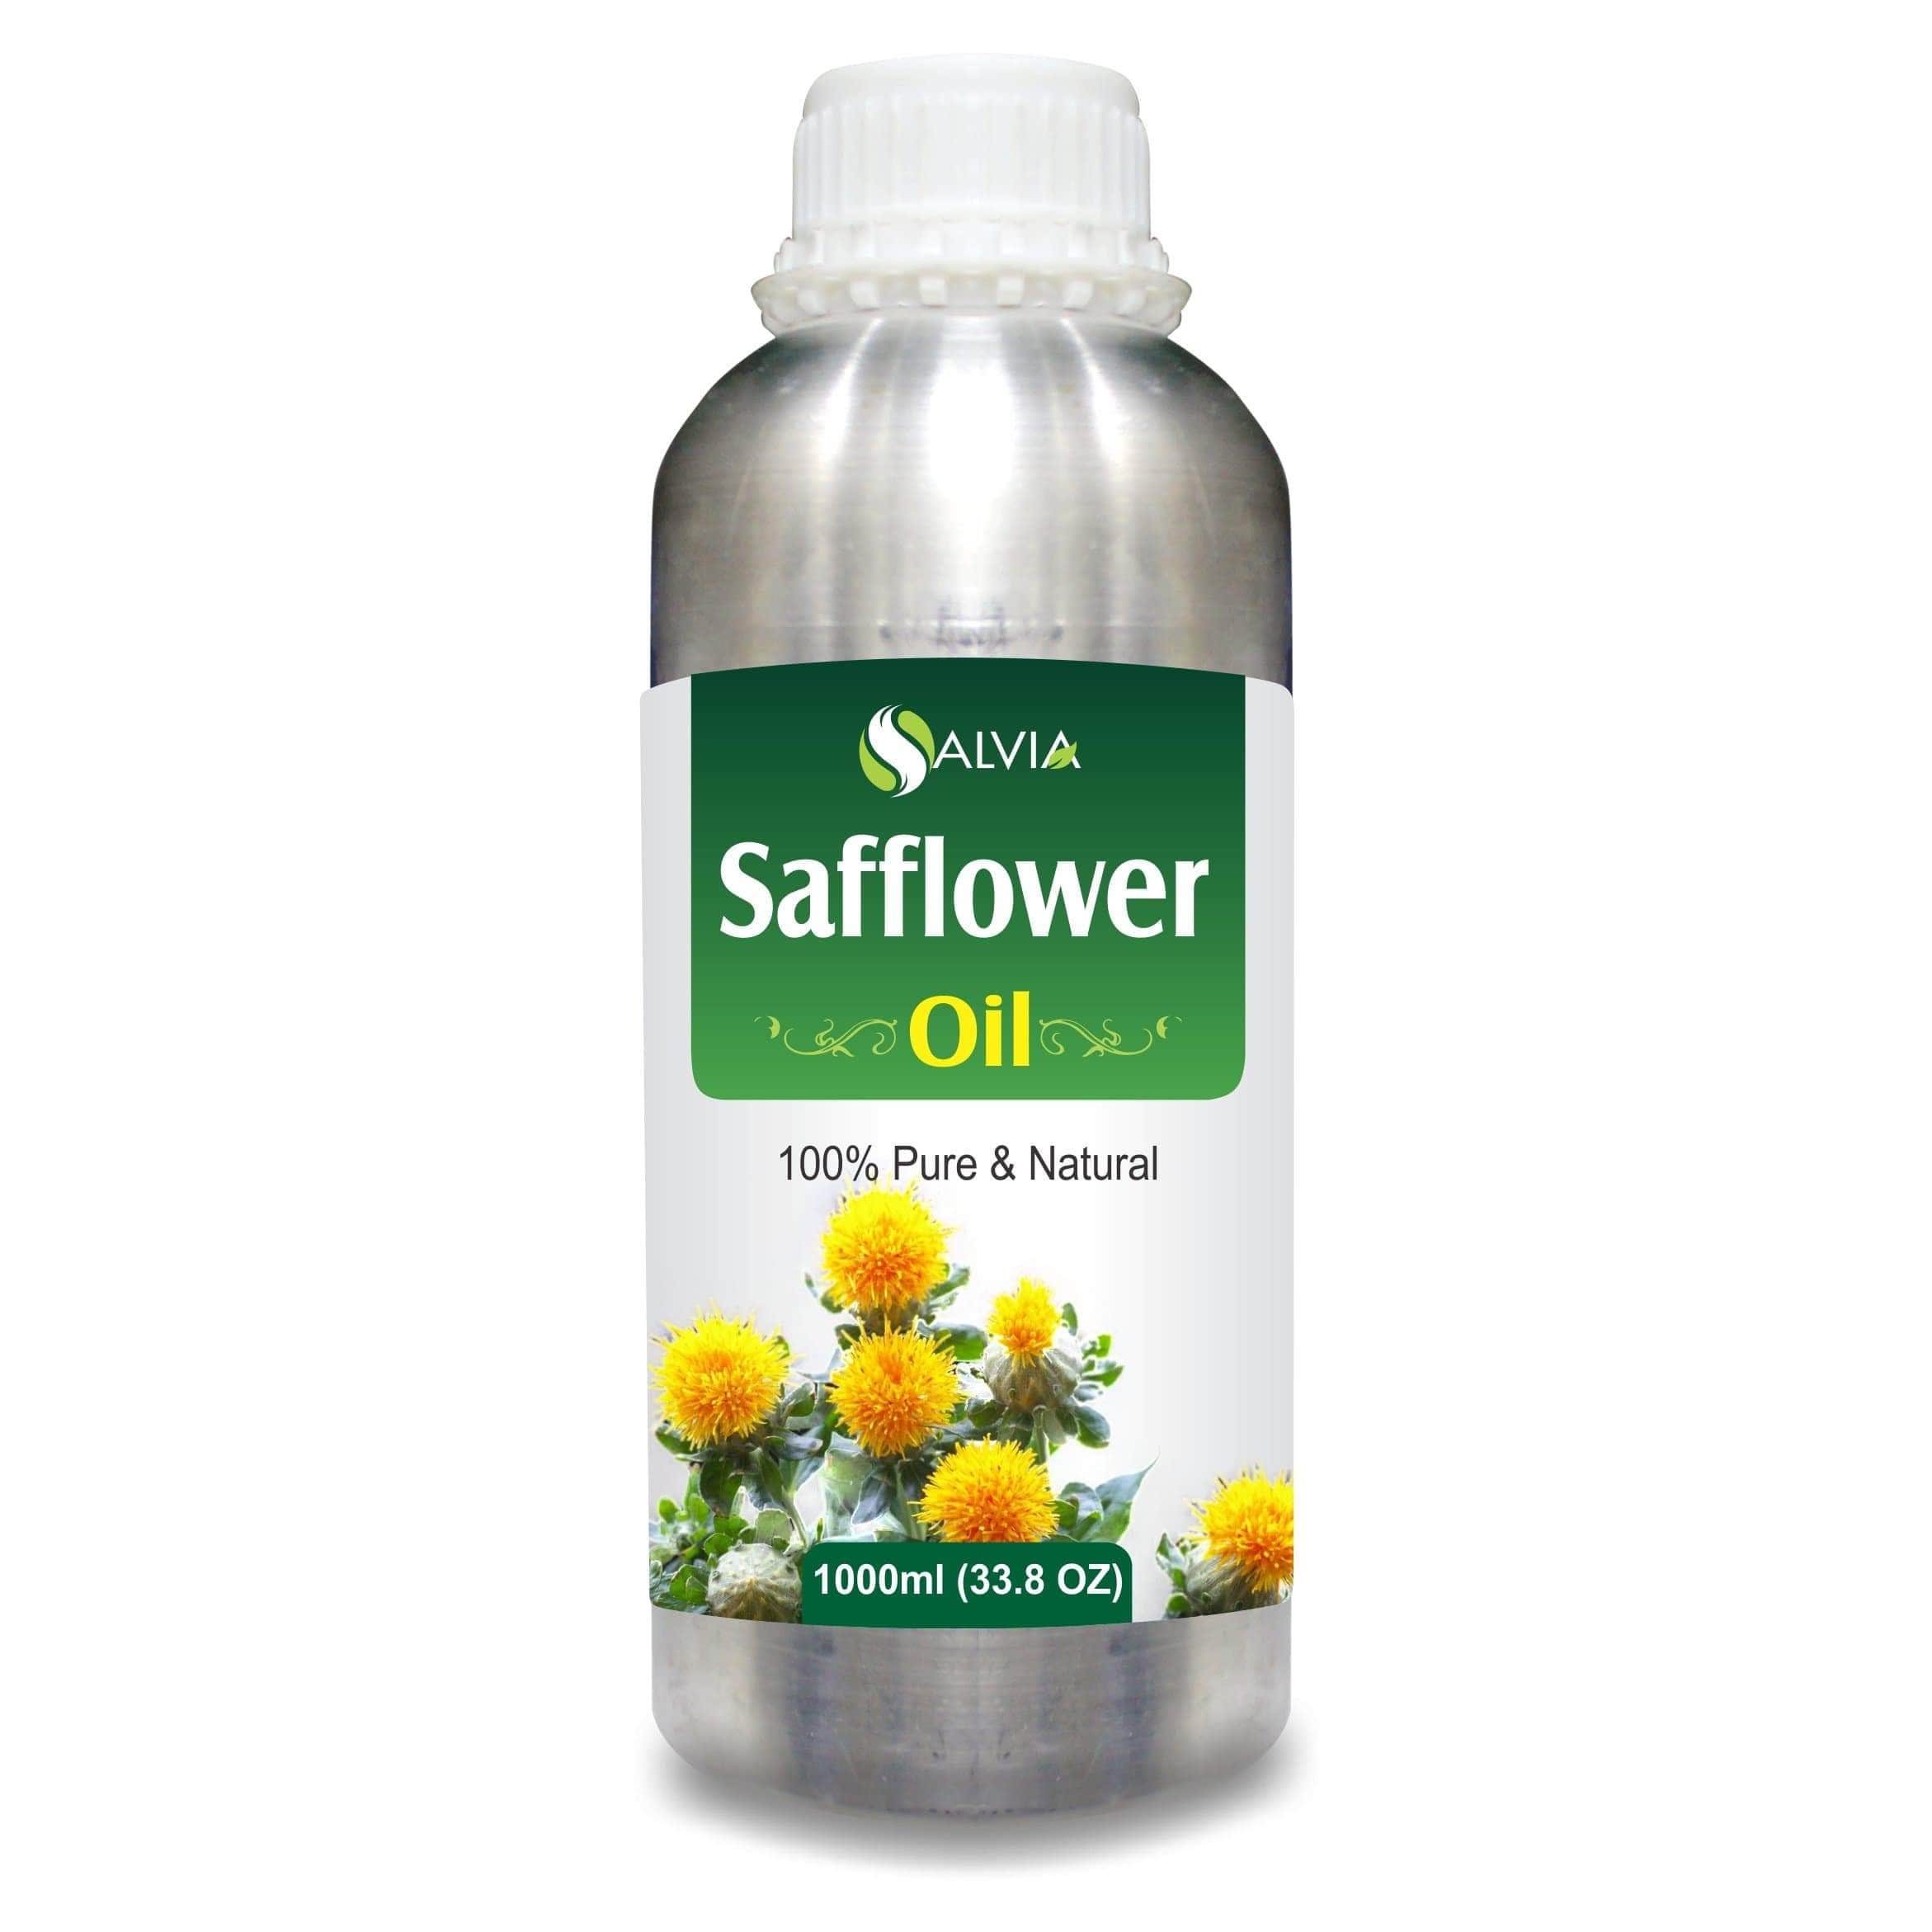 safflower oil side effects